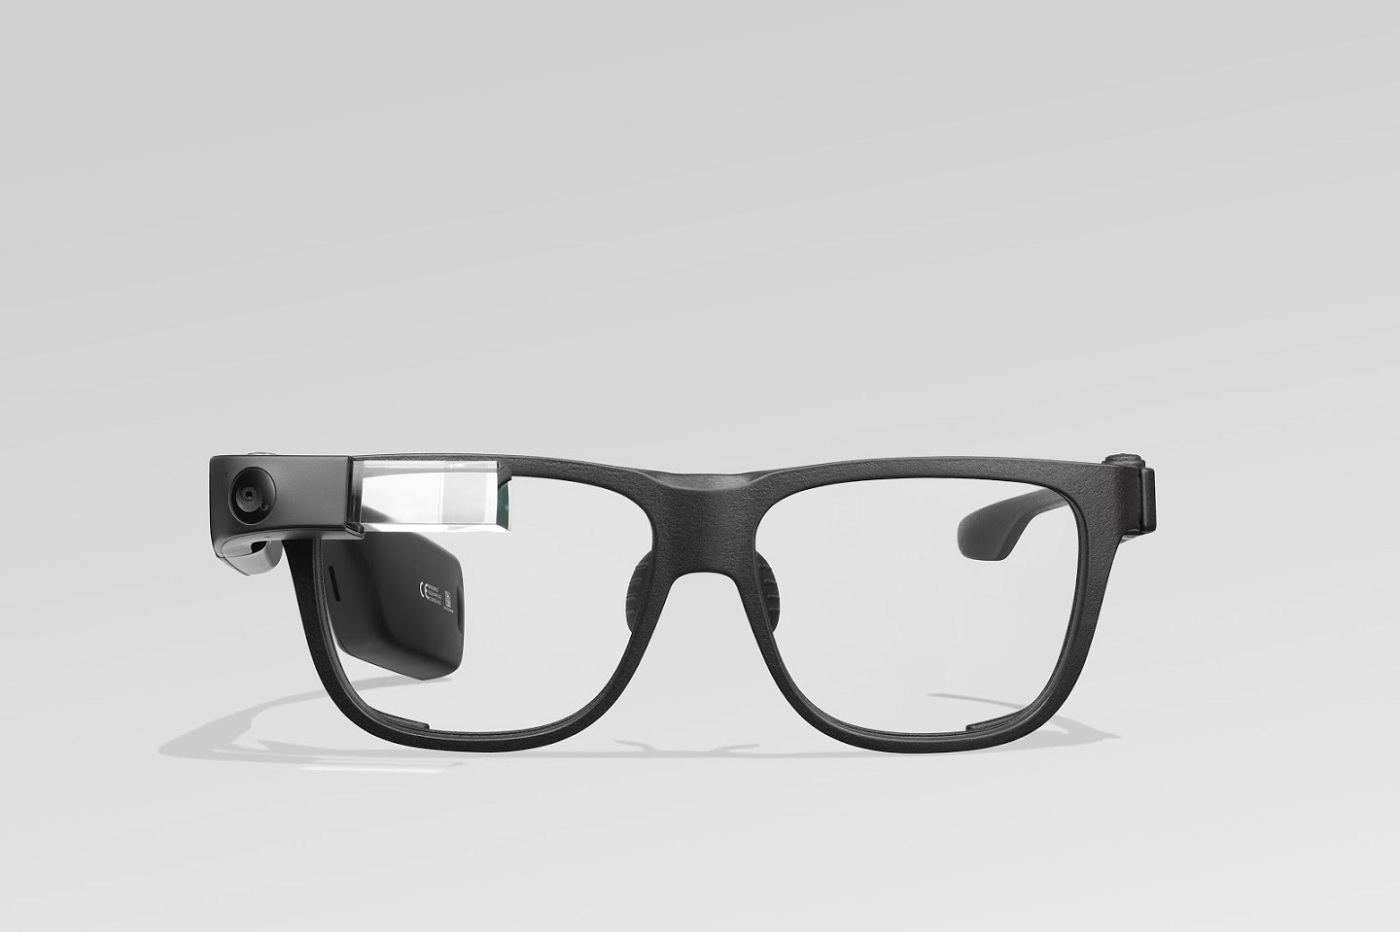 Google glass prix Maroc : Profitez des fonctionnalités dues avec les lunettes Huawei Gentle Monster